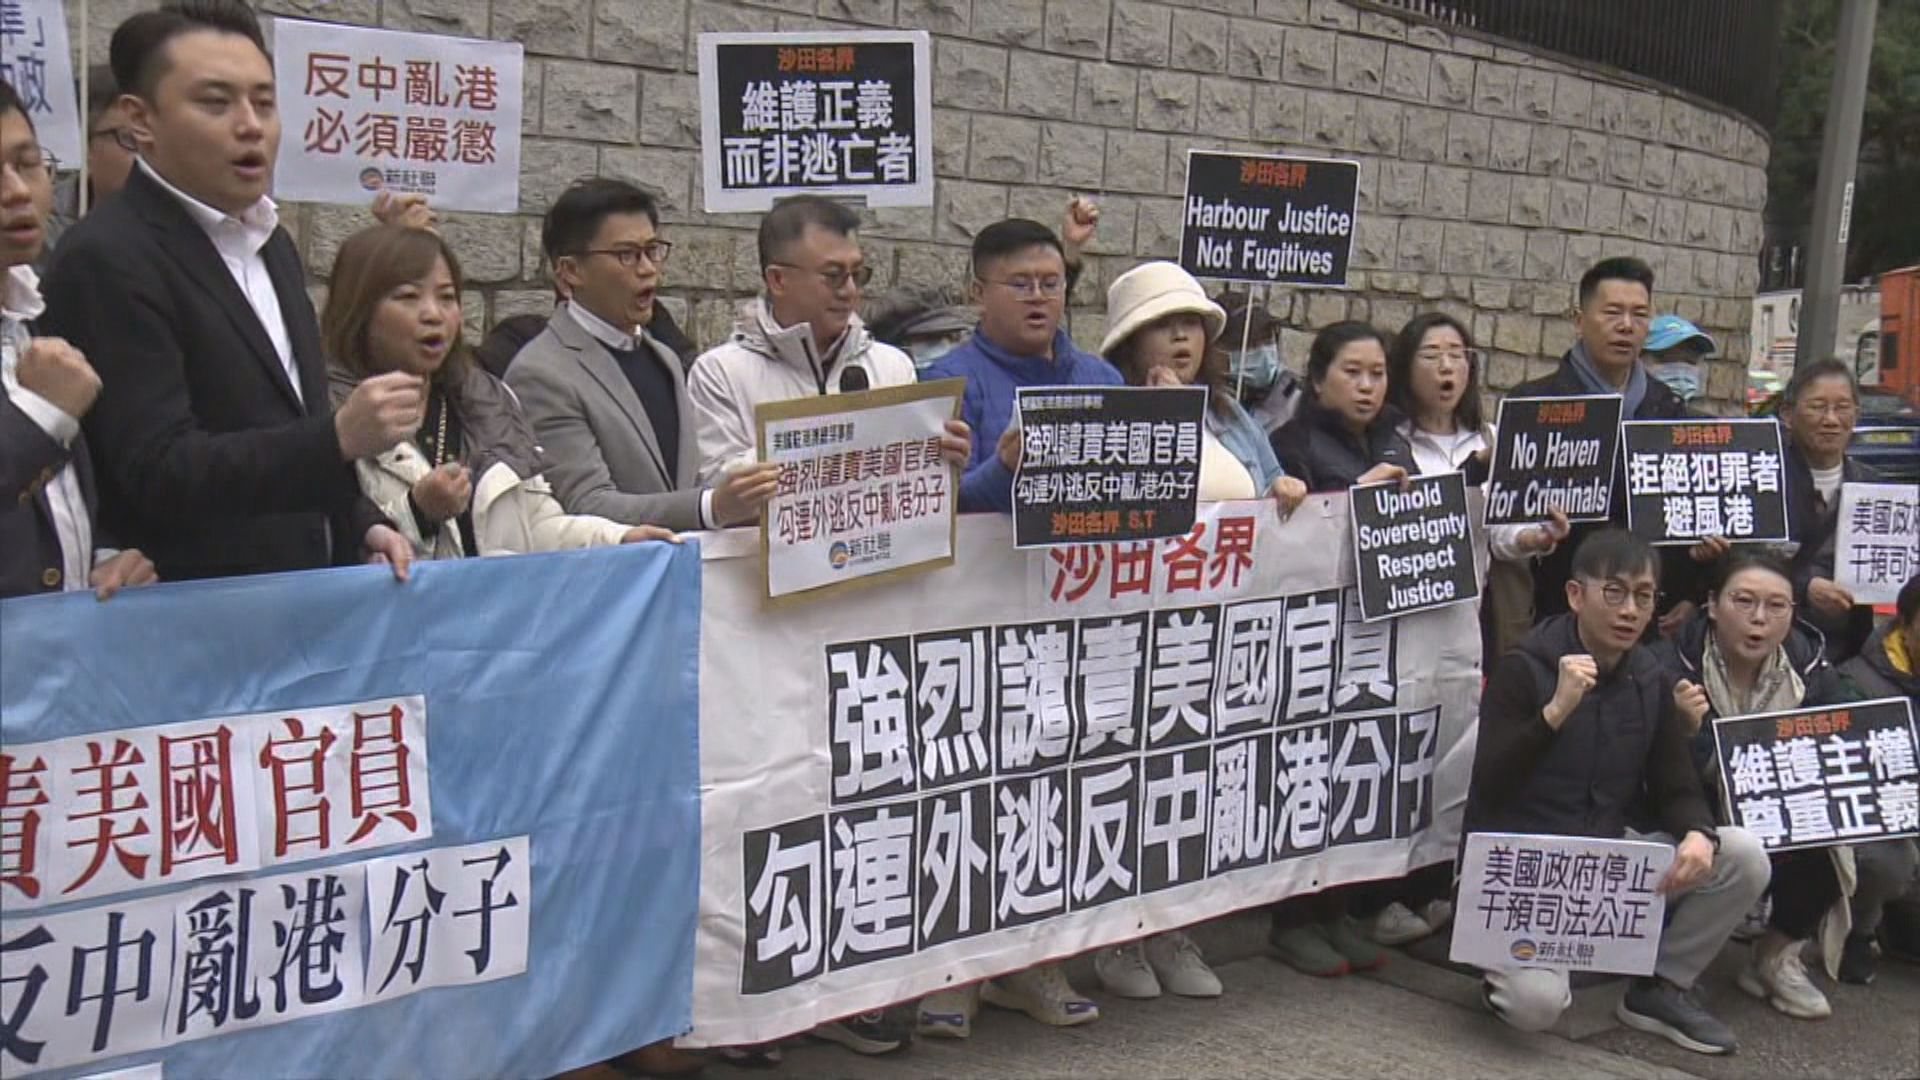 多個團體到美領館抗議干預中國內政 包庇通緝犯